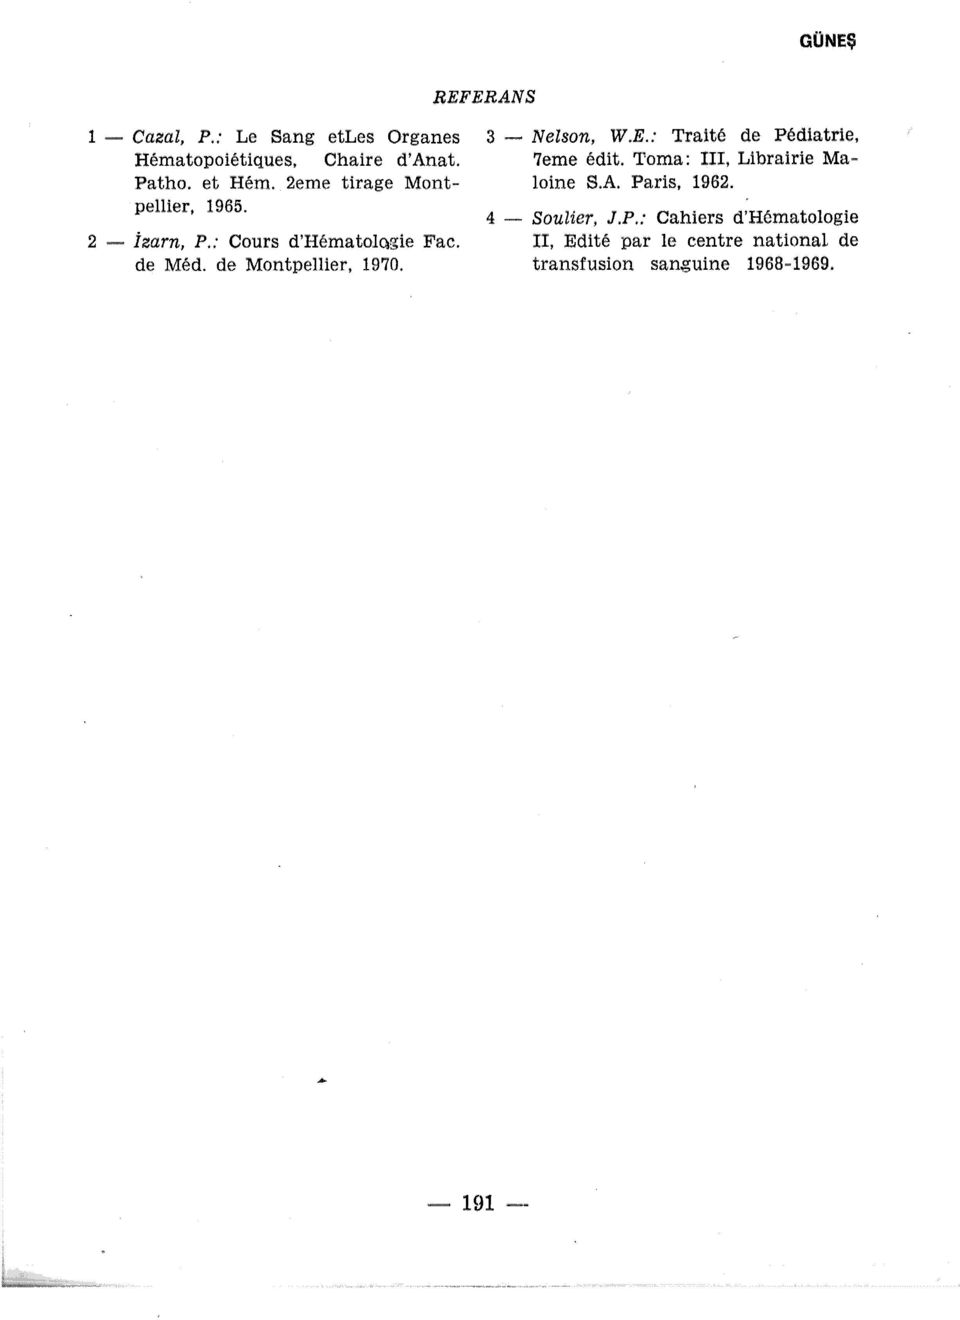 3 - Nelson, W.E.: Traite de Pediatrie, 7eme edit. Torna: III, Librairie Maloine S.A. Paris, 1962.